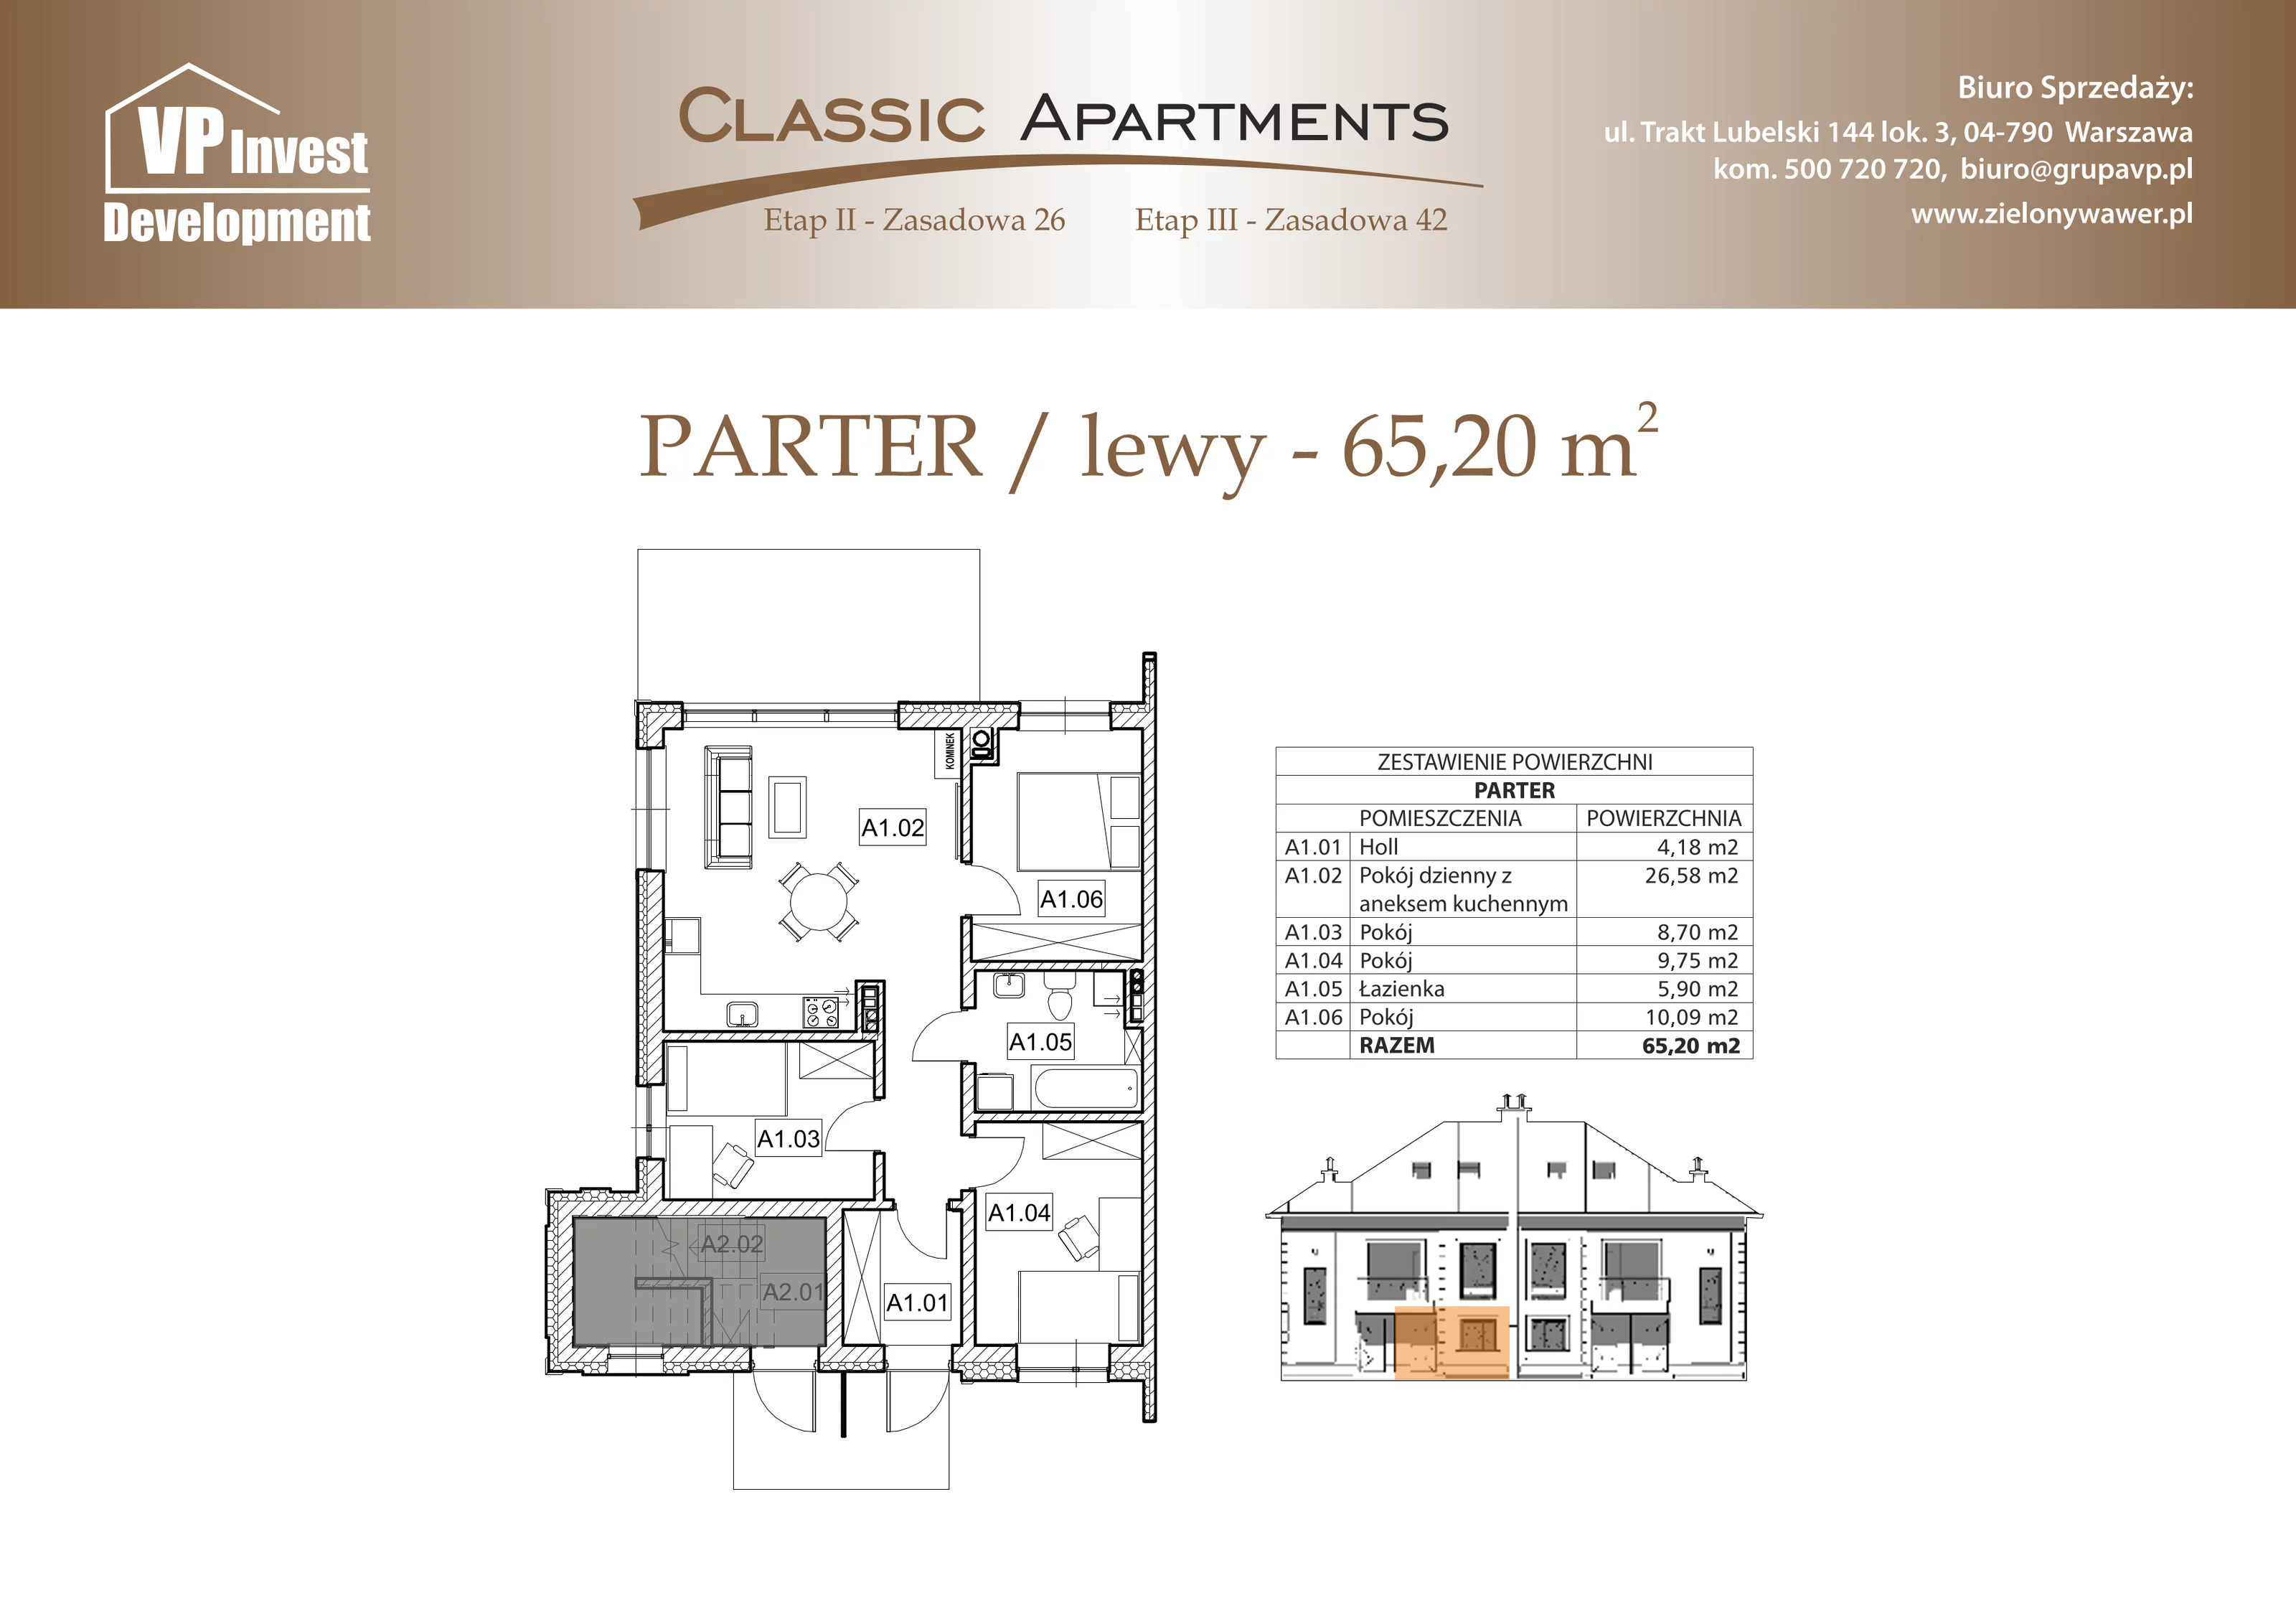 Apartament 65,20 m², parter, oferta nr CA5/15, Classic Apartments II, Warszawa, Wawer, Wawer, ul. Zasadowa 42